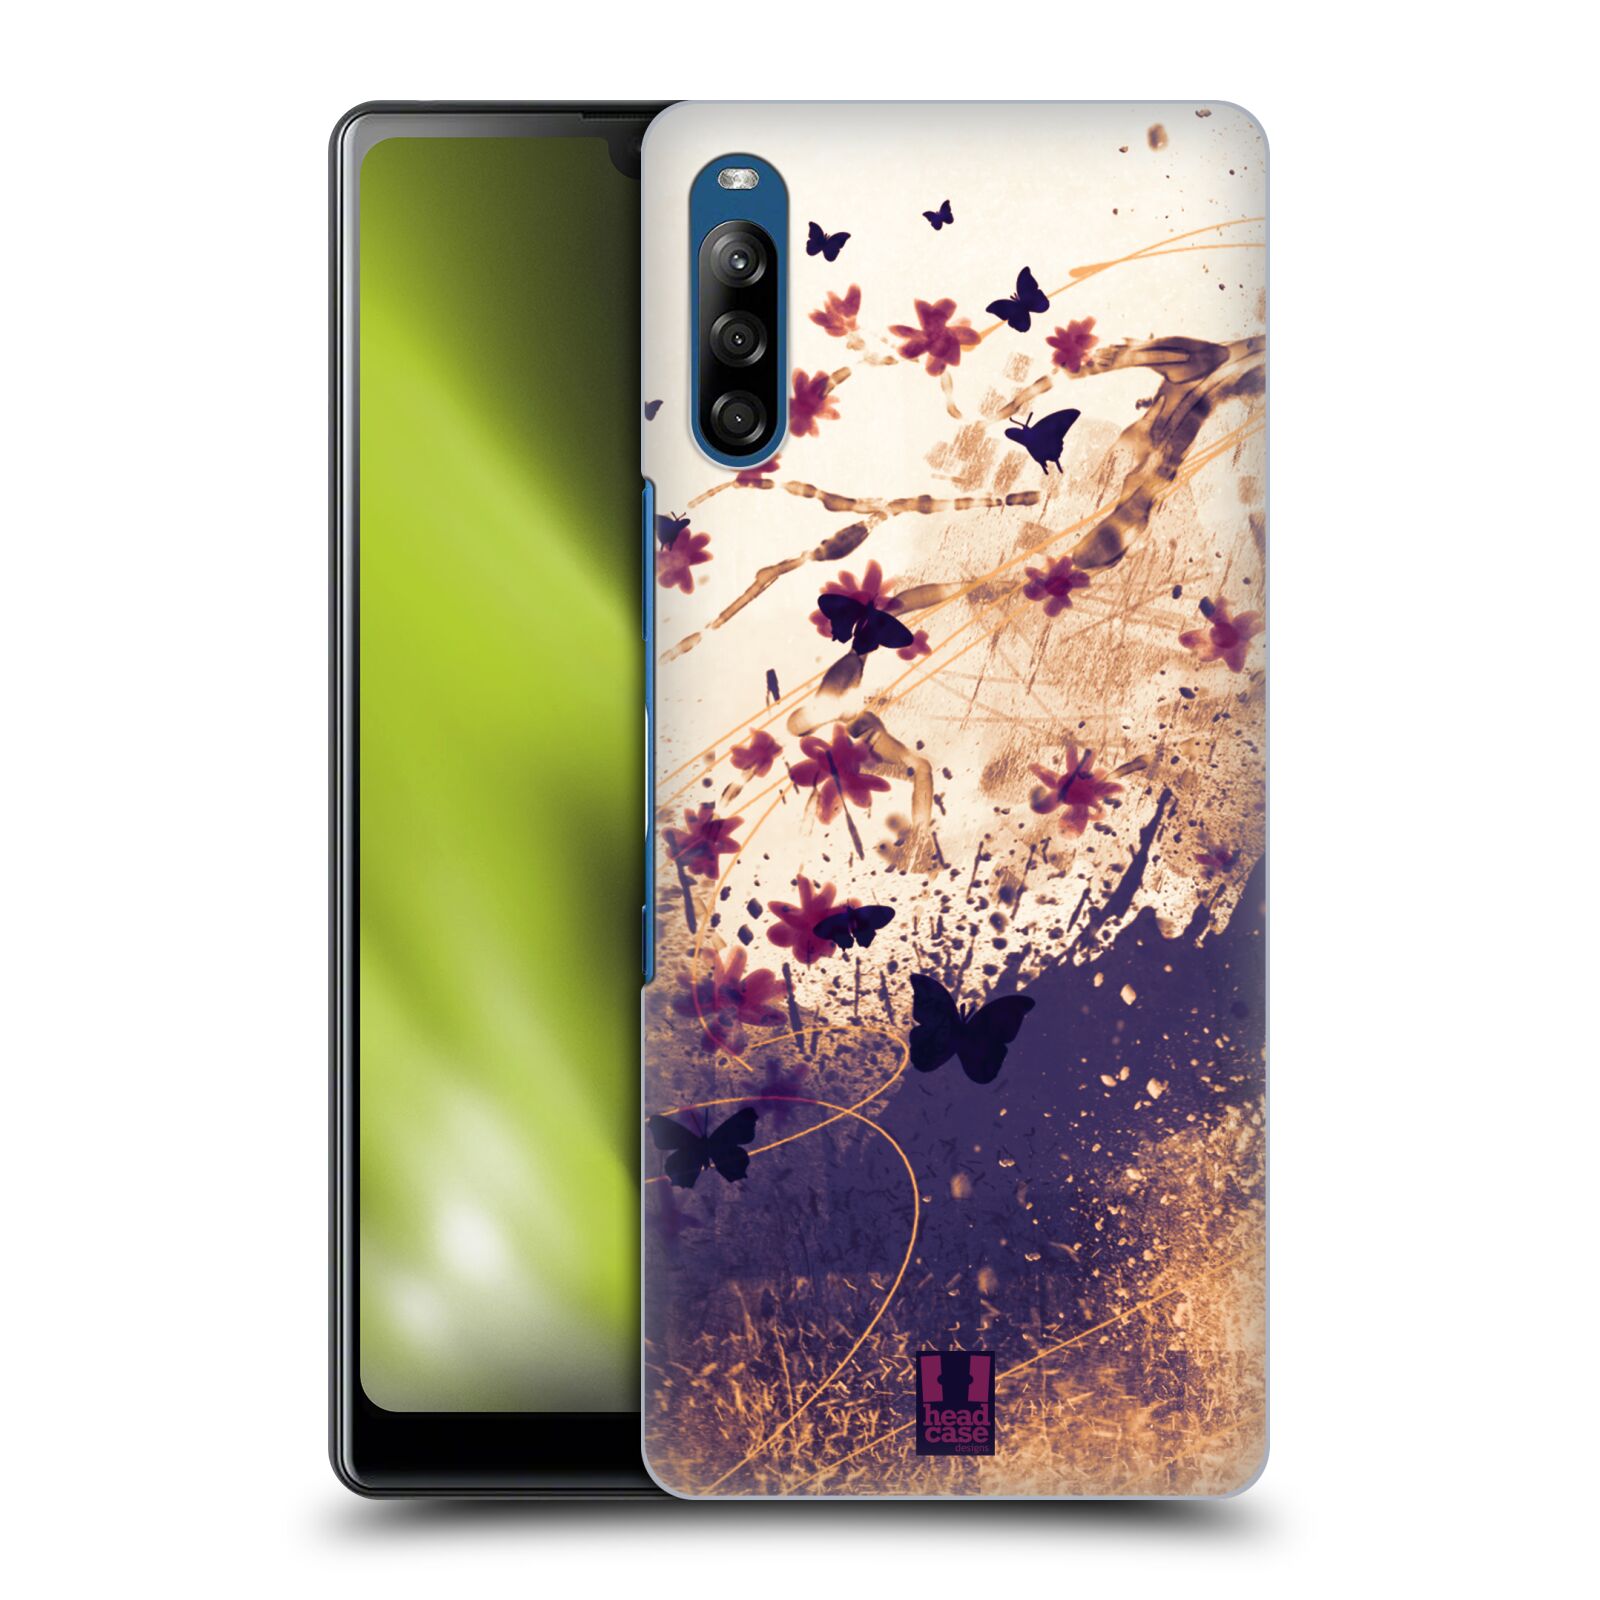 Zadní obal pro mobil Sony Xperia L4 - HEAD CASE - Barevné květy a motýlci